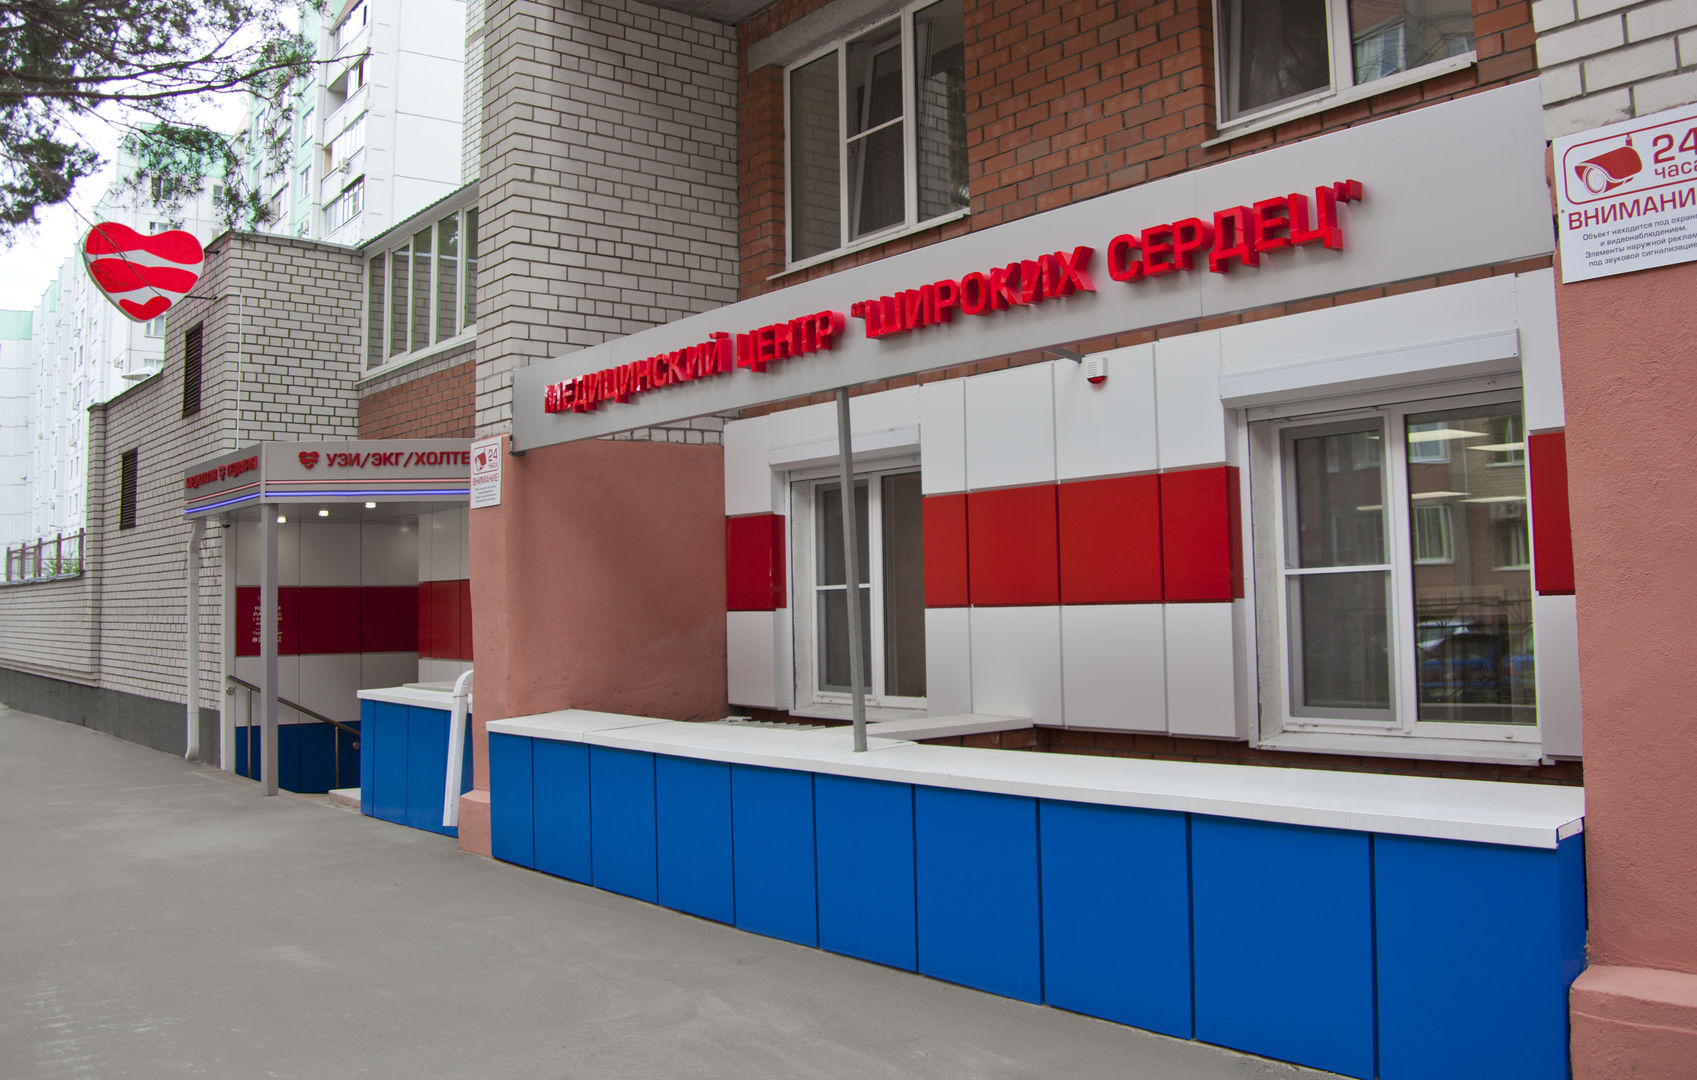 Медицинский центр широких сердец Воронеж Пограничная